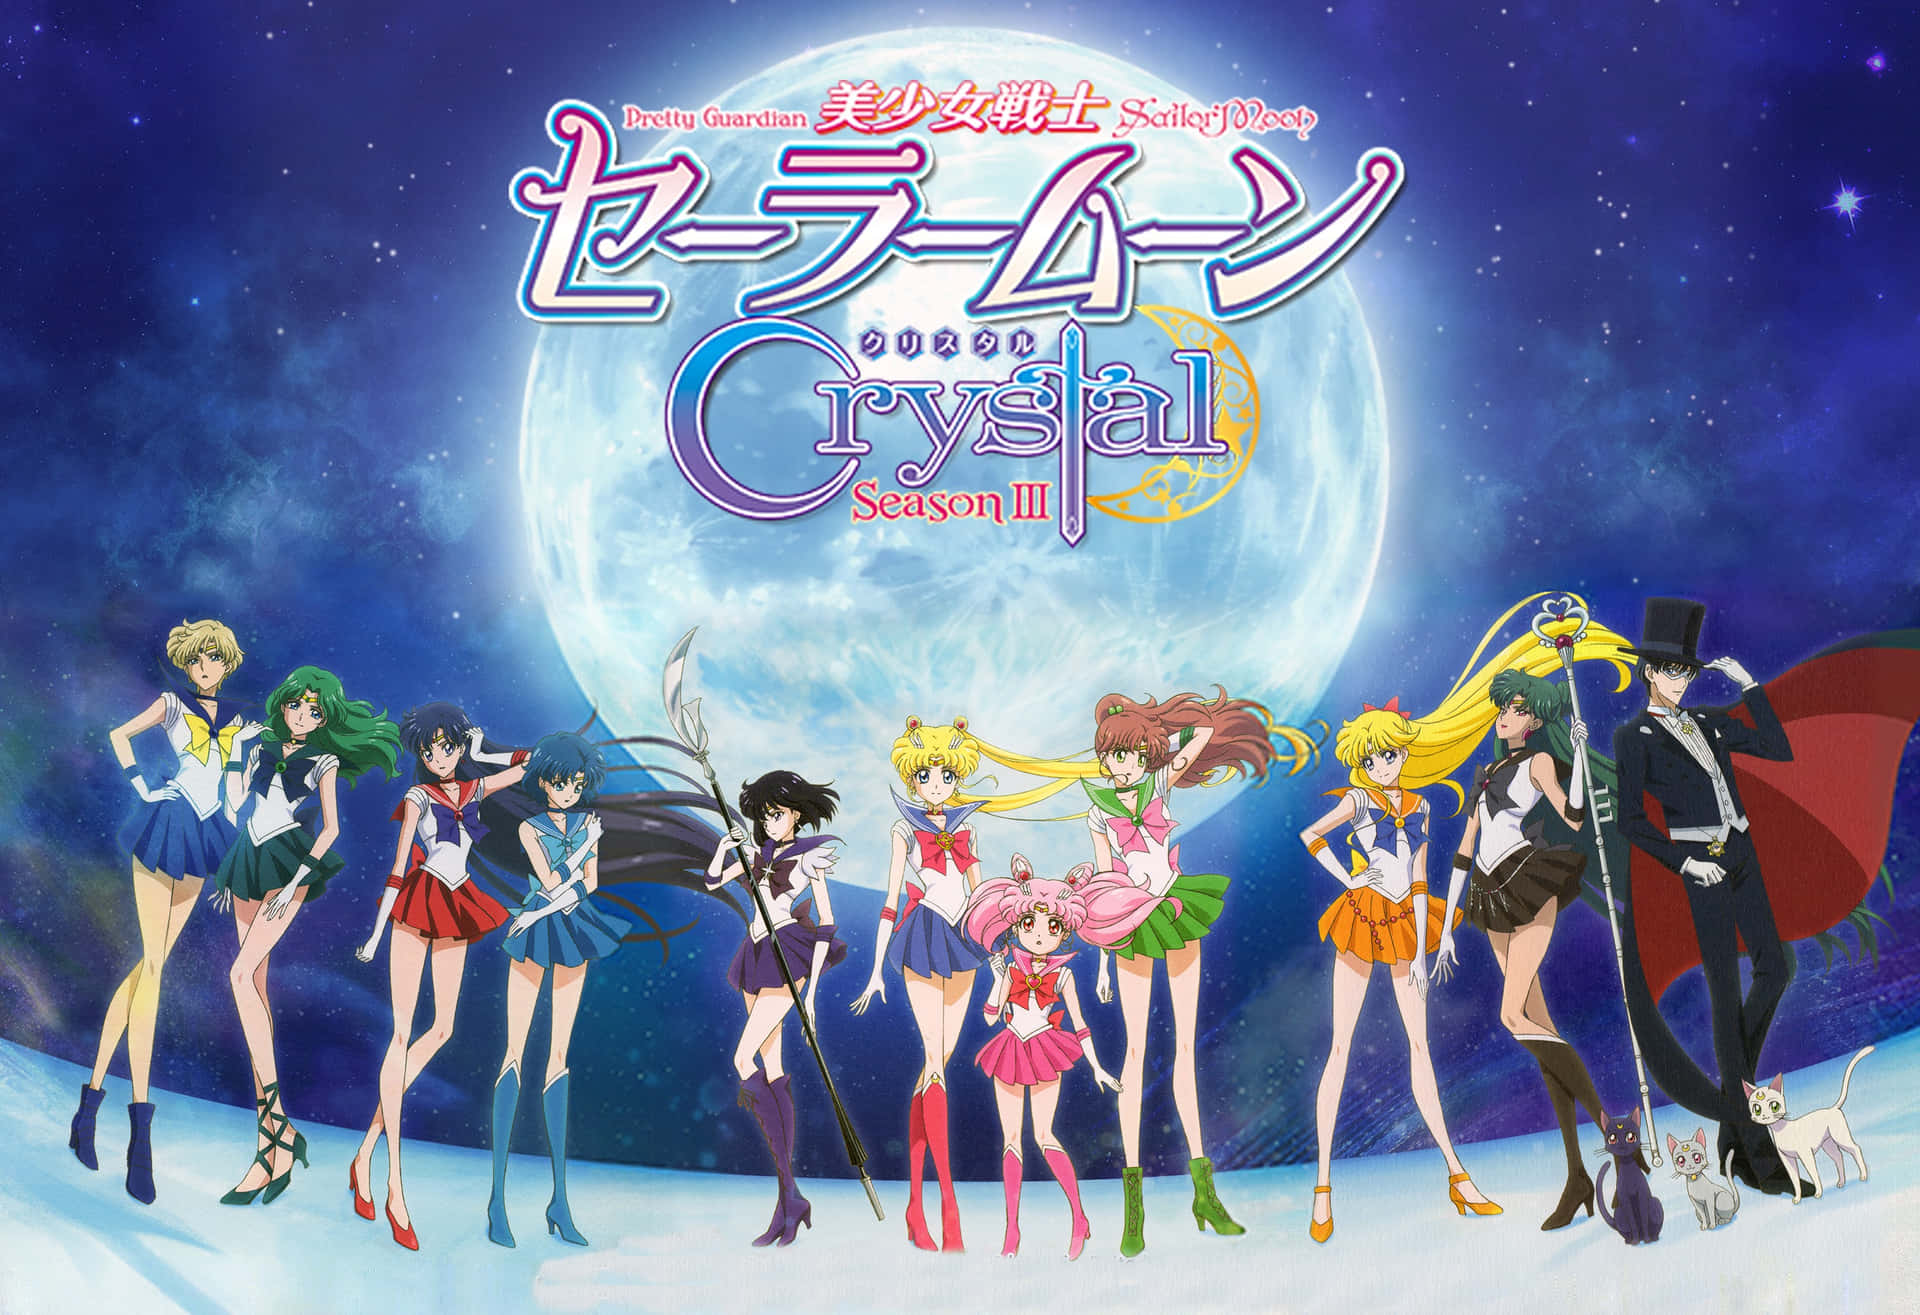 Personagensde Sailor Moon Crystal Papel de Parede